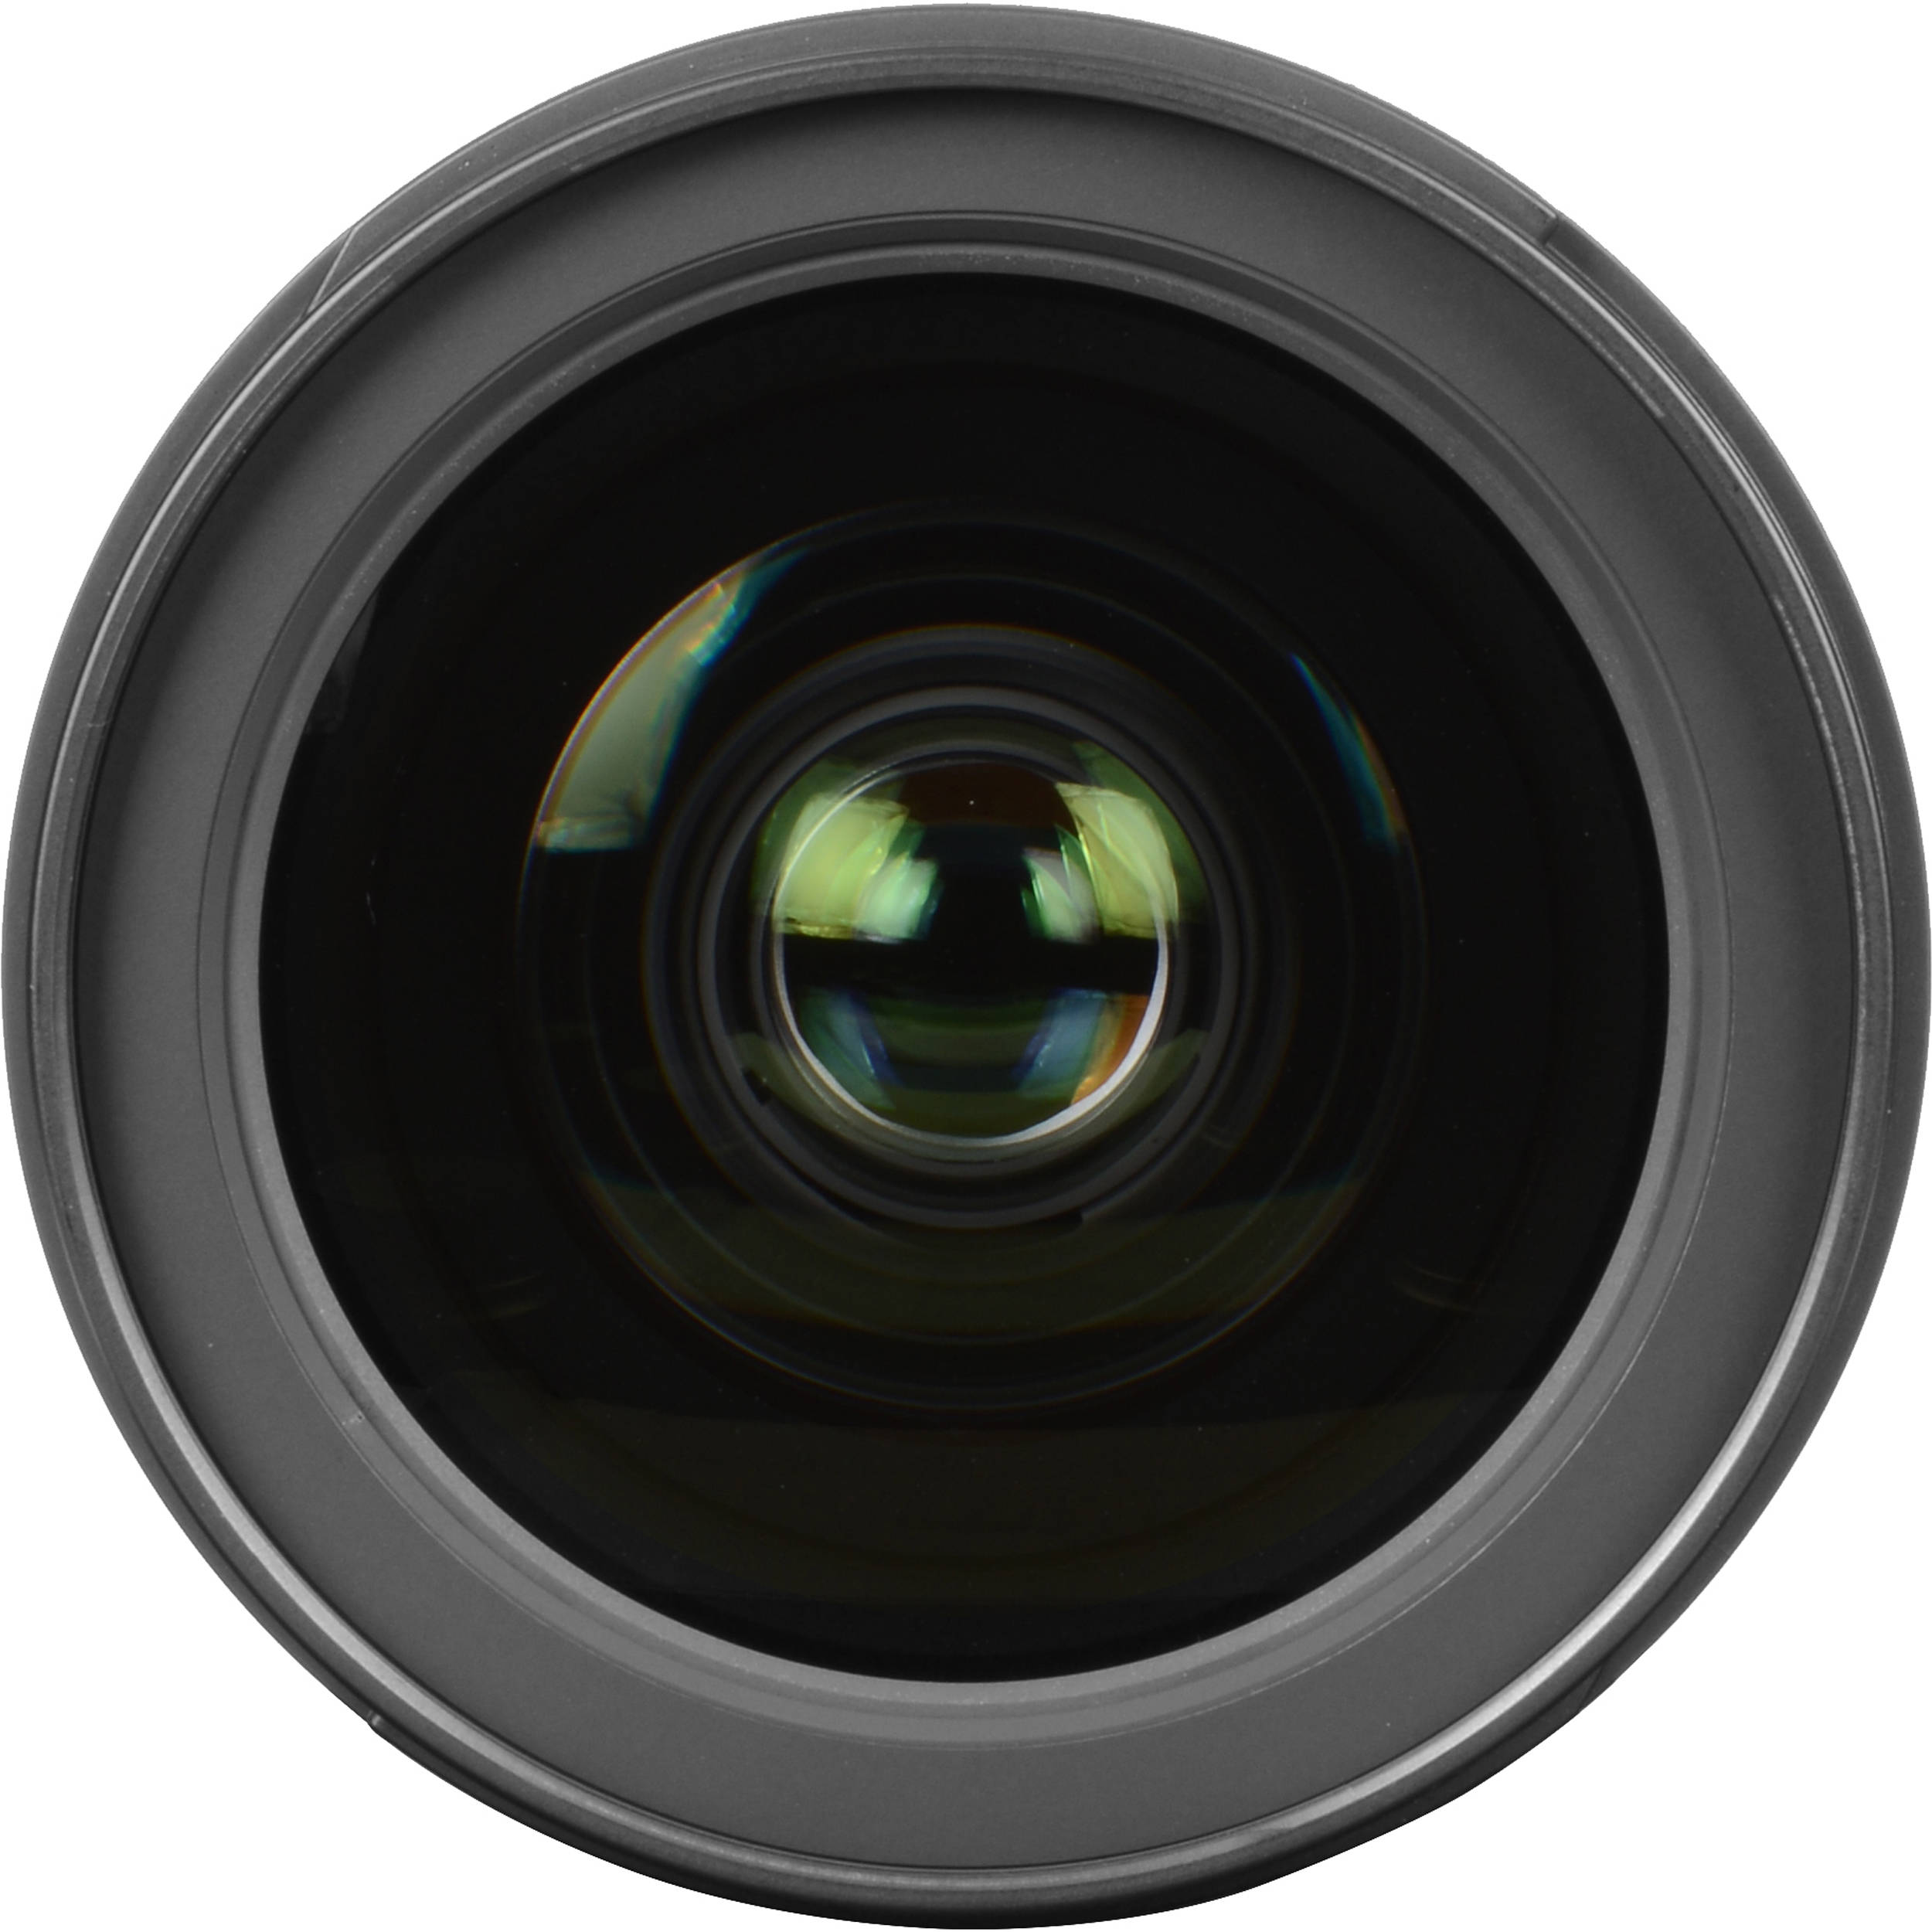 Nikon Af S Nikkor 24 70mm F 2 8e Ed Vr Lens 052 B H Photo Video